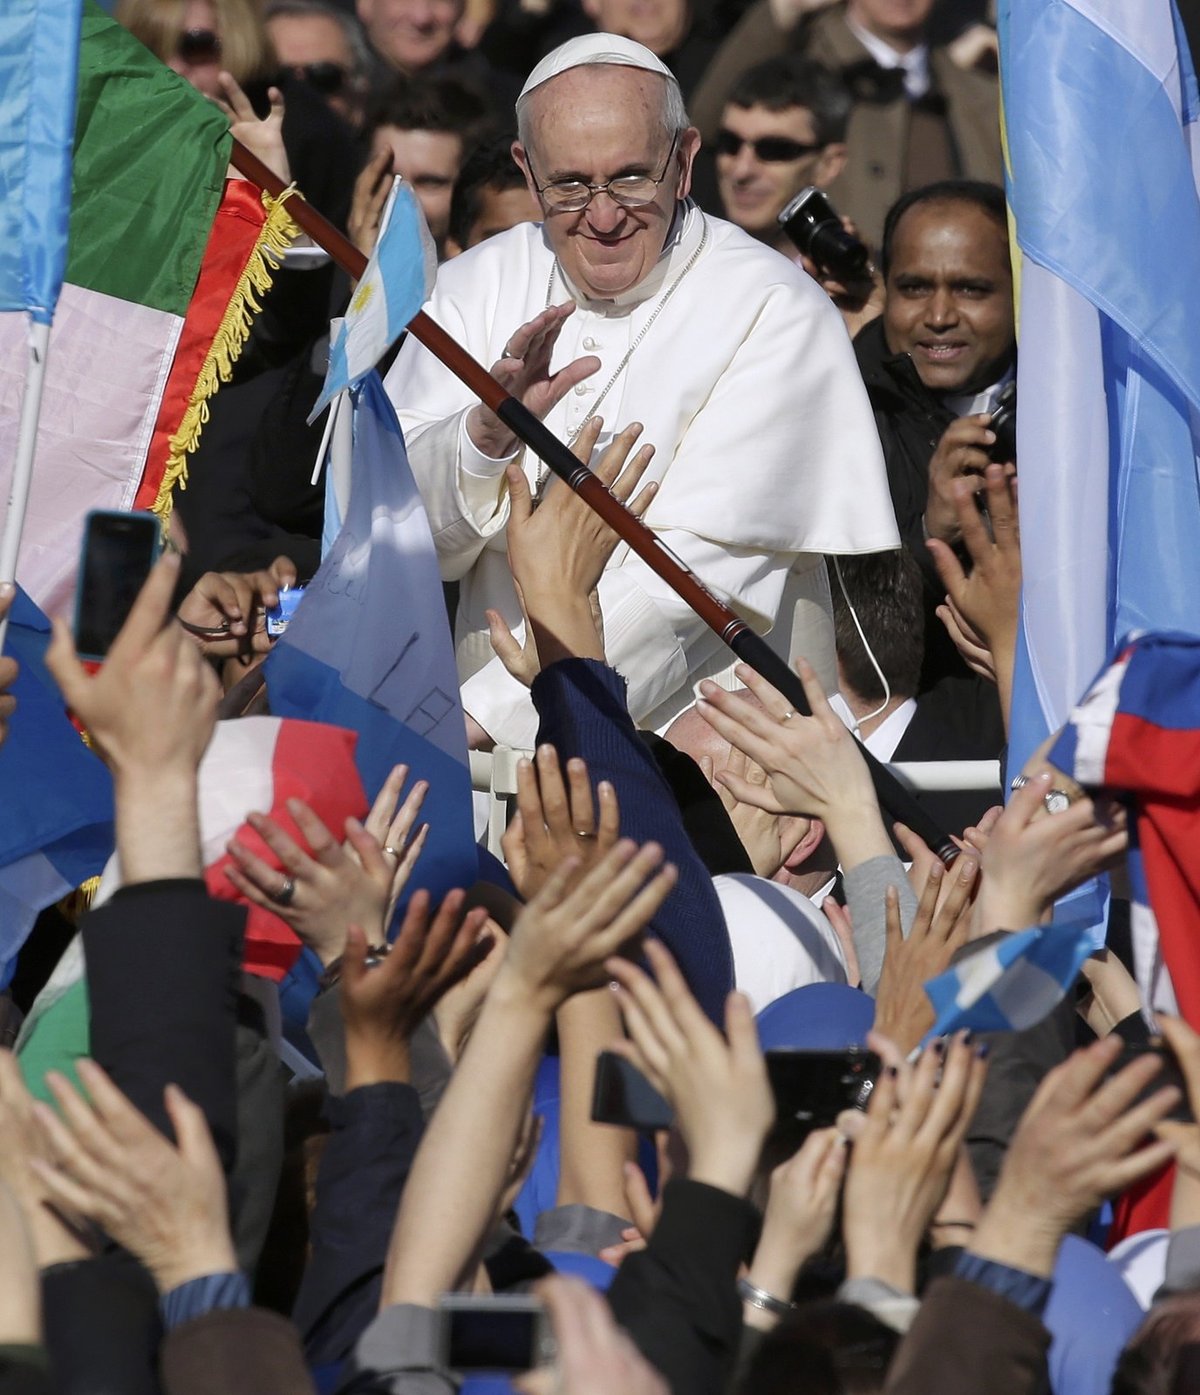 Inaugurace nového papeže